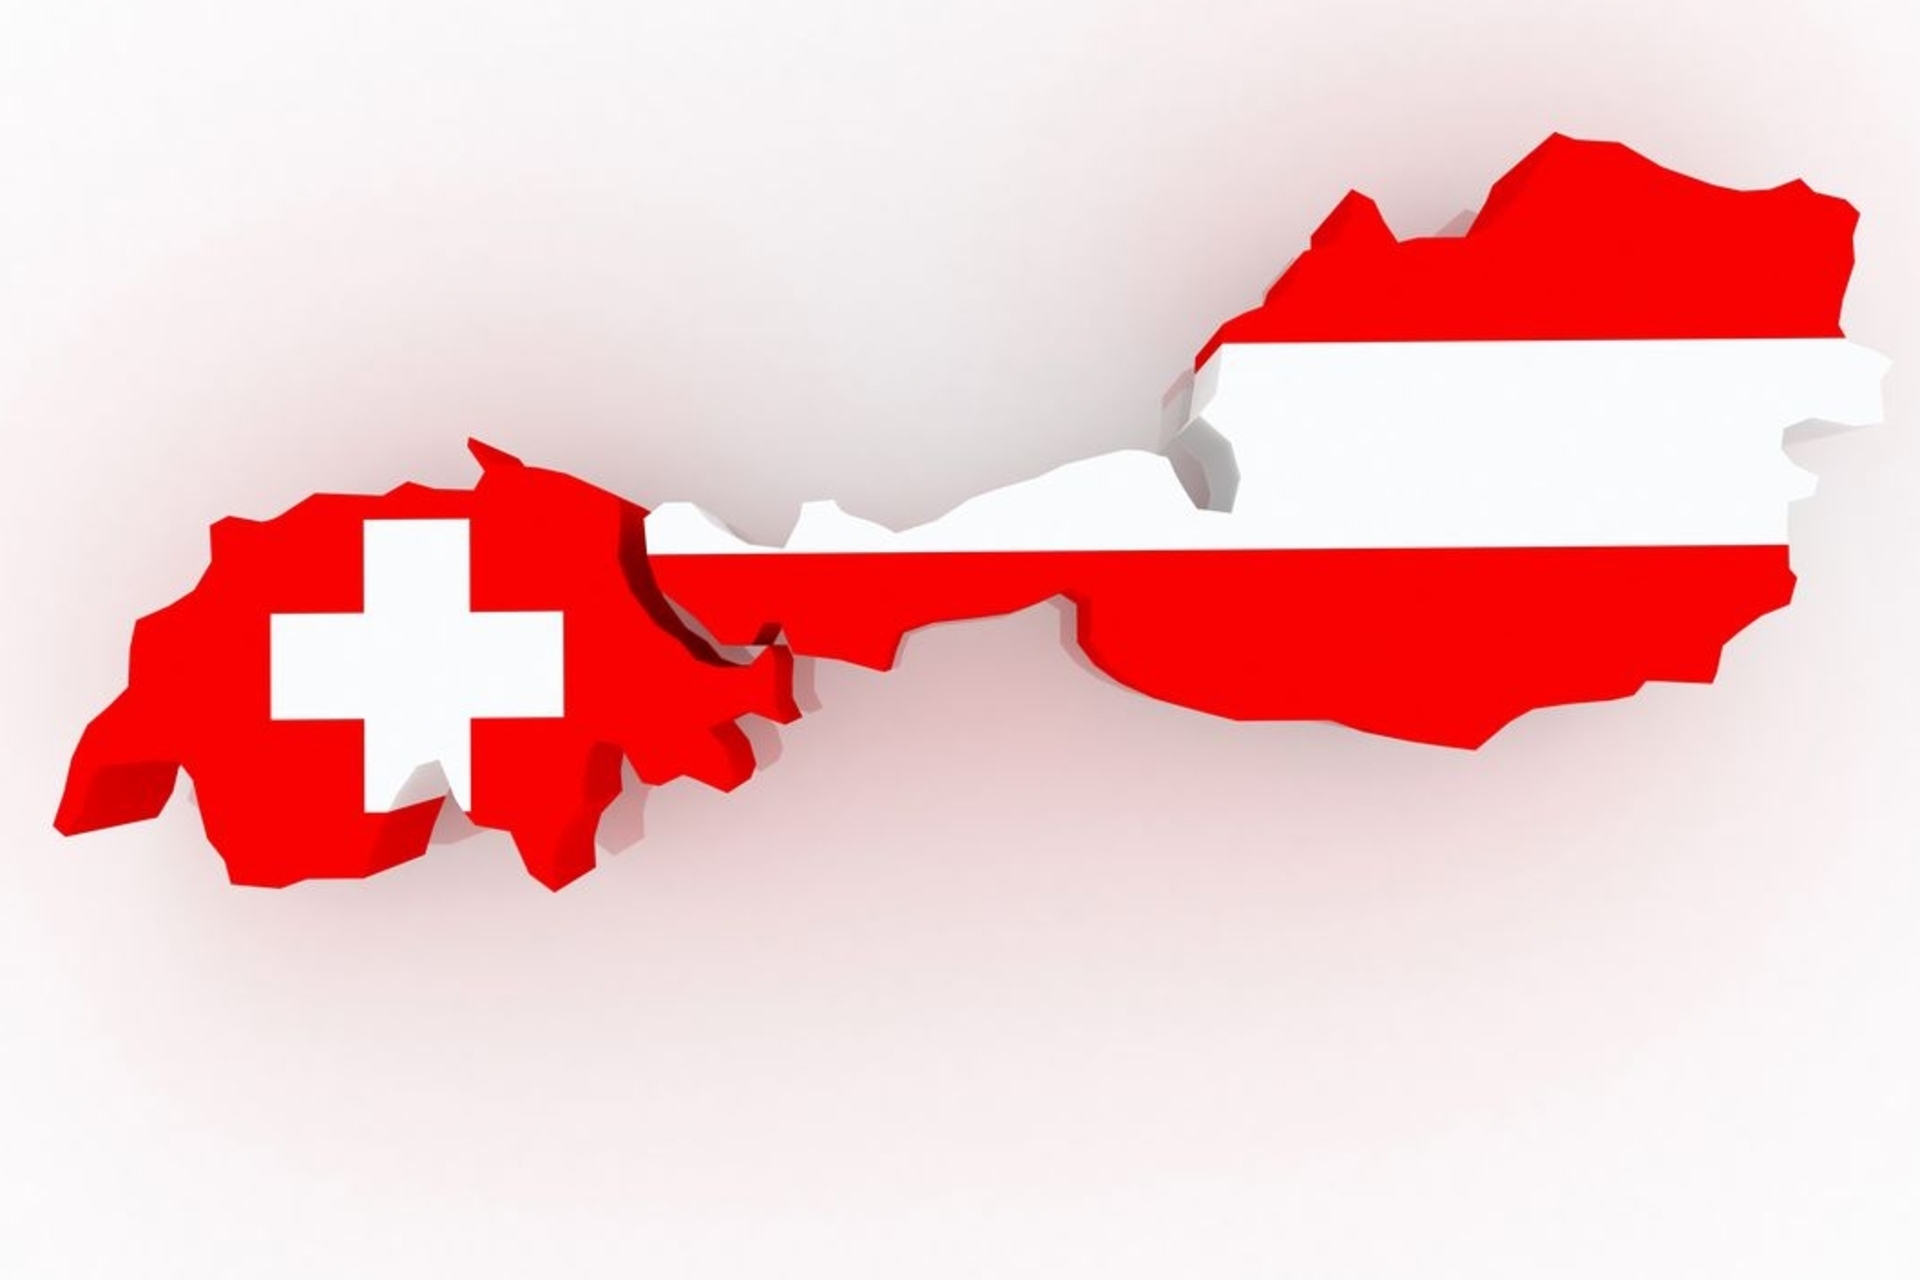 İsviçre ve Avusturya'nın sınırları ve bayrakları